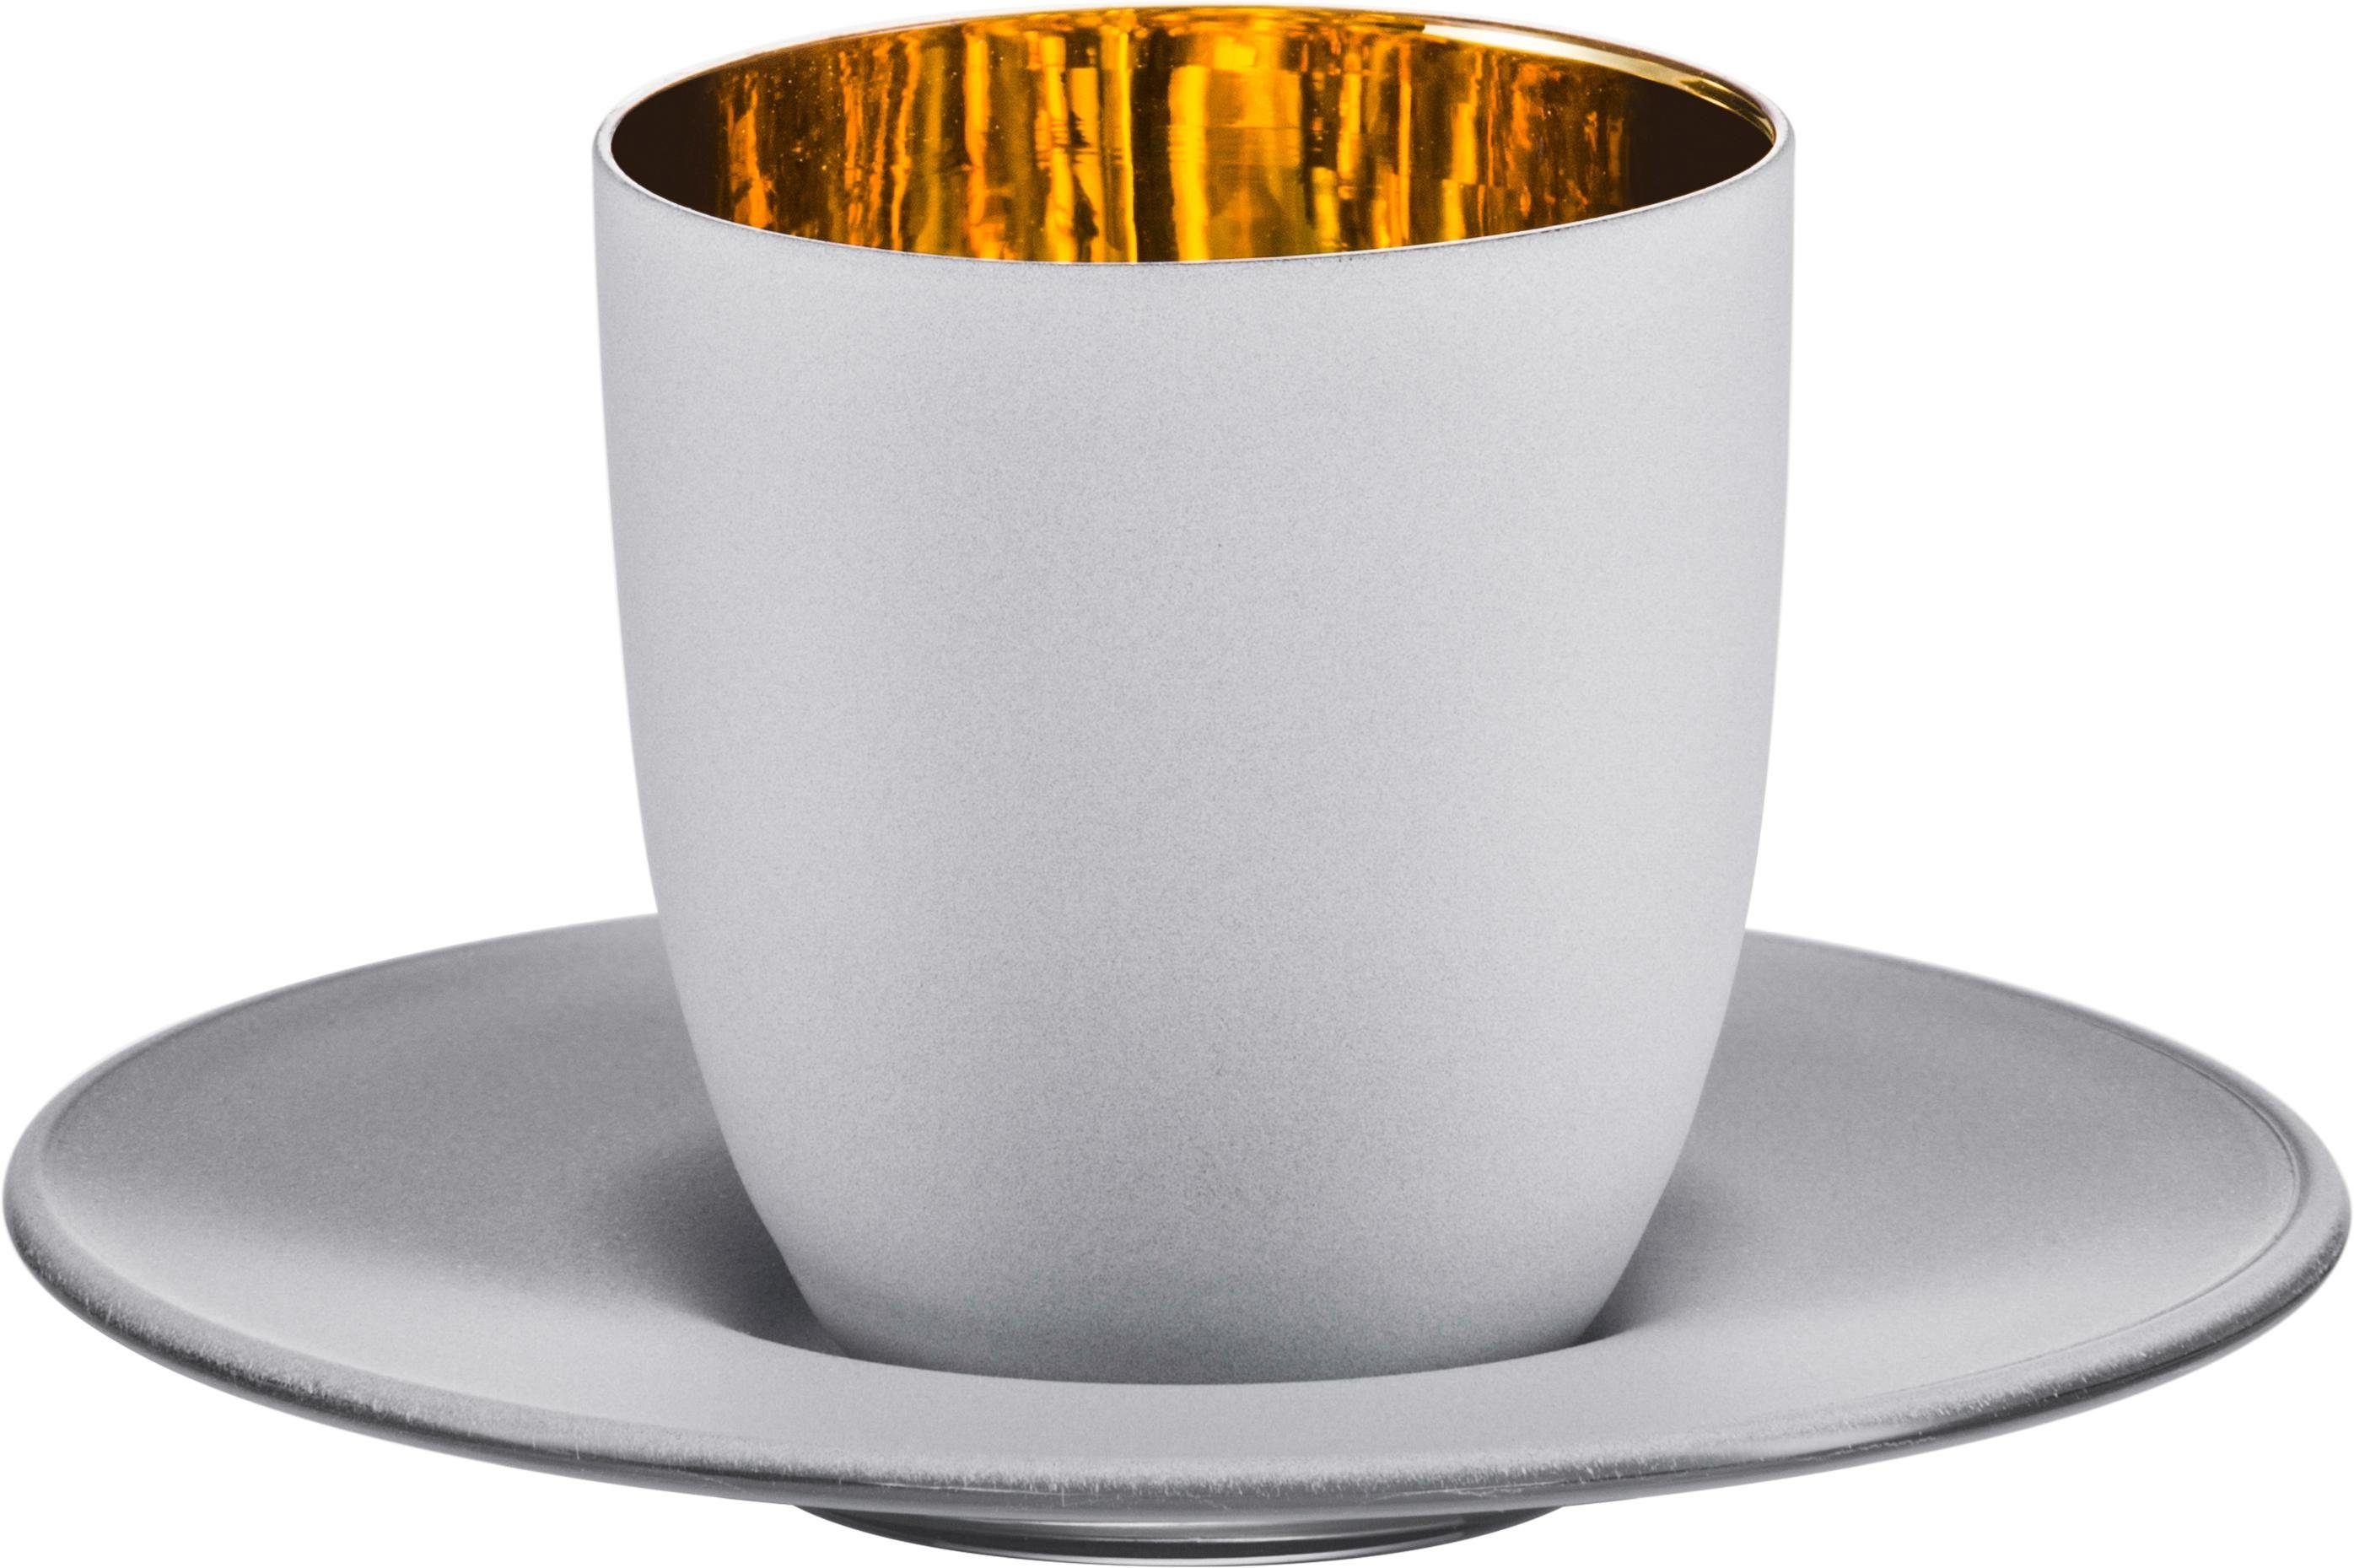 Eisch Espressoglas Cosmo gold, Kristallglas, 100 Germany, bleifrei, in empfohlen Echtgold, 2-teilig, wird handgefertigt, Made Handwäsche ml